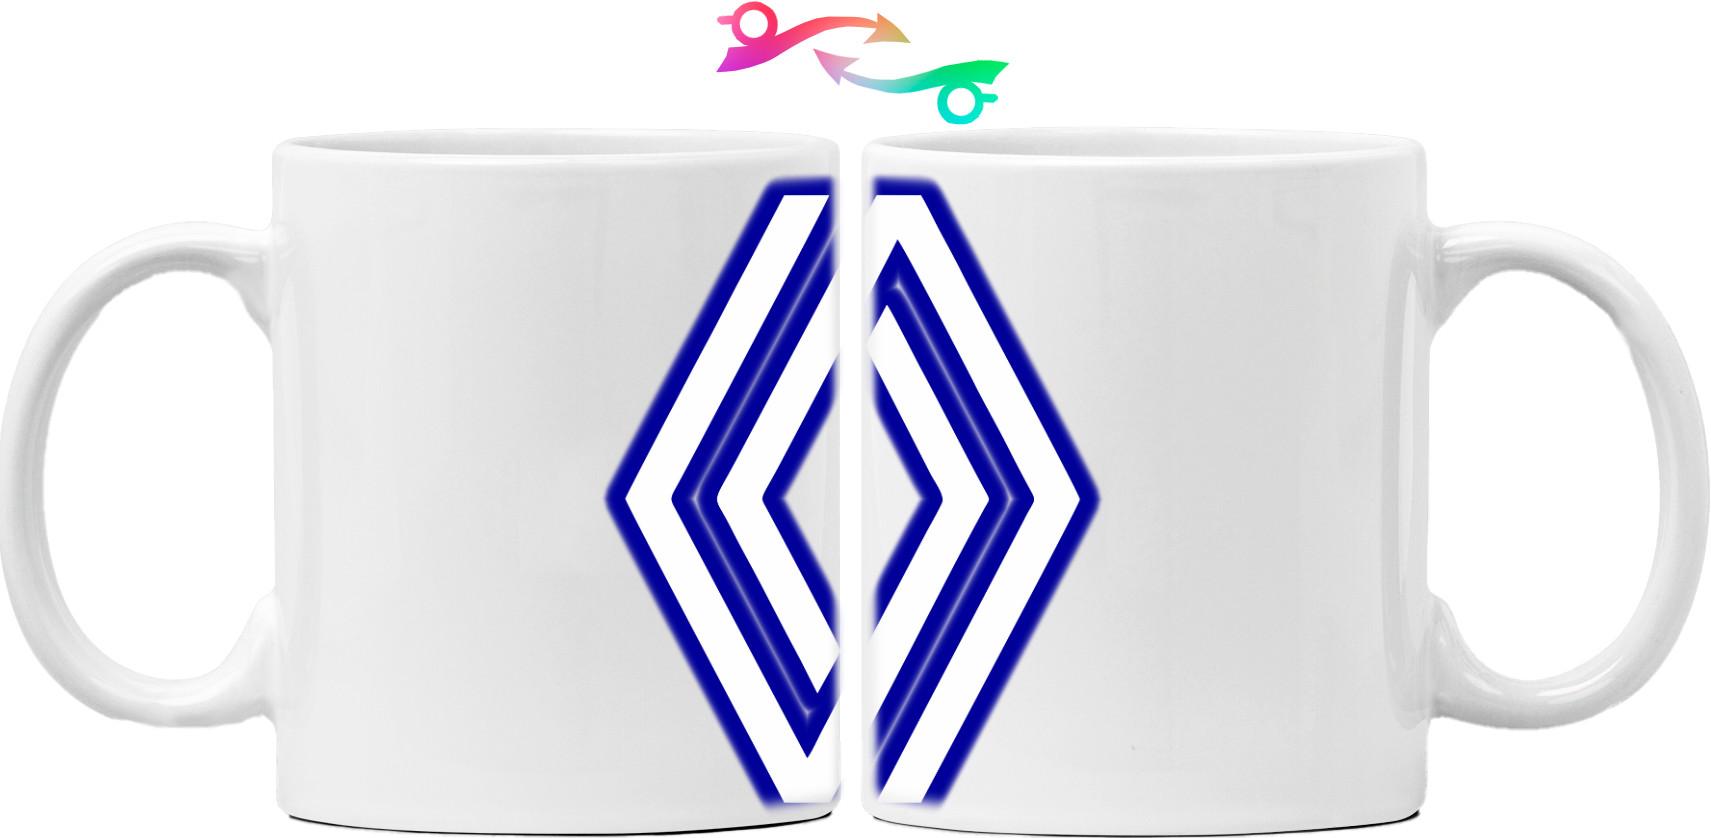 RENAULT logo 2